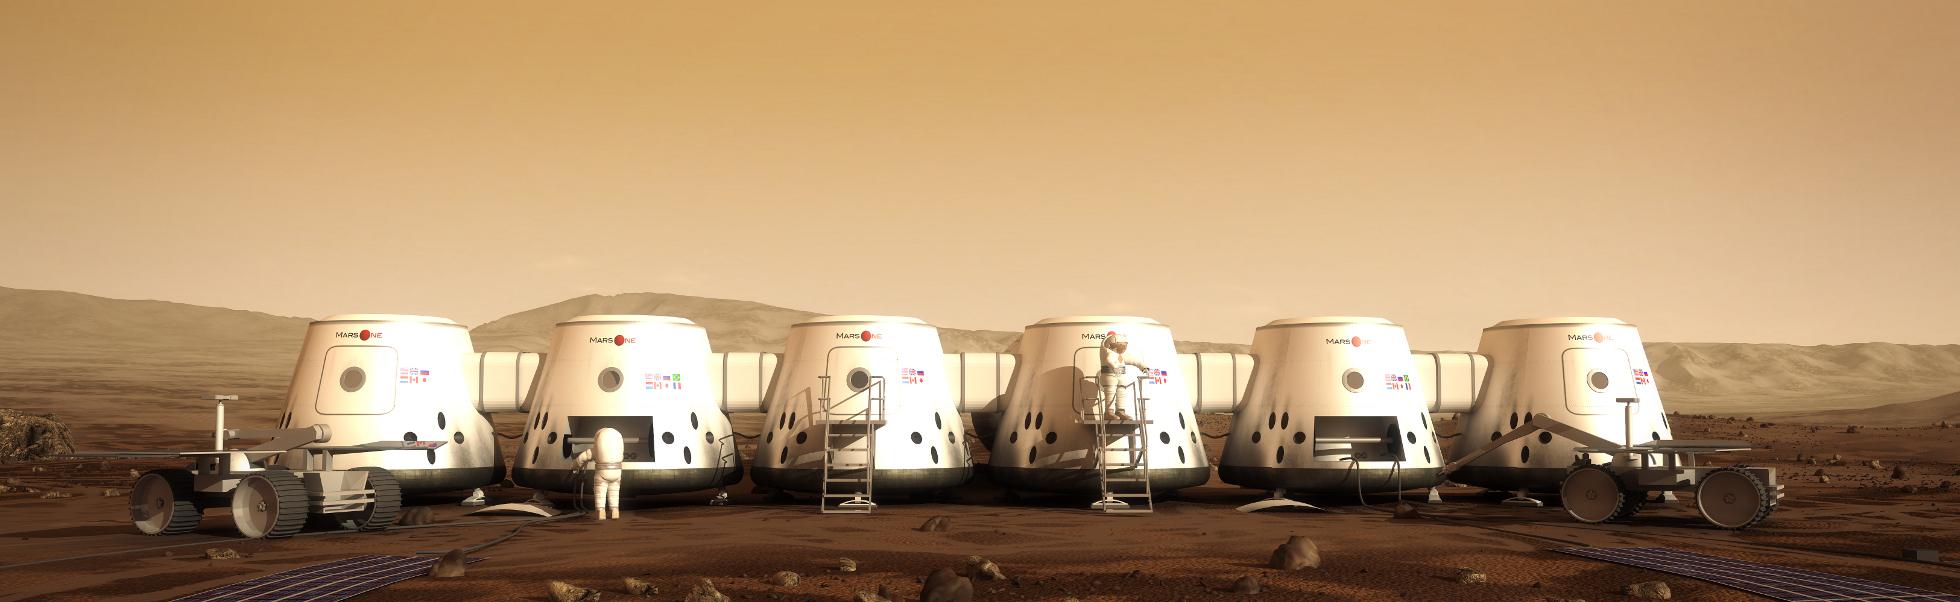 Slik skal den modulbaserte basen se ut.Foto: Mars One